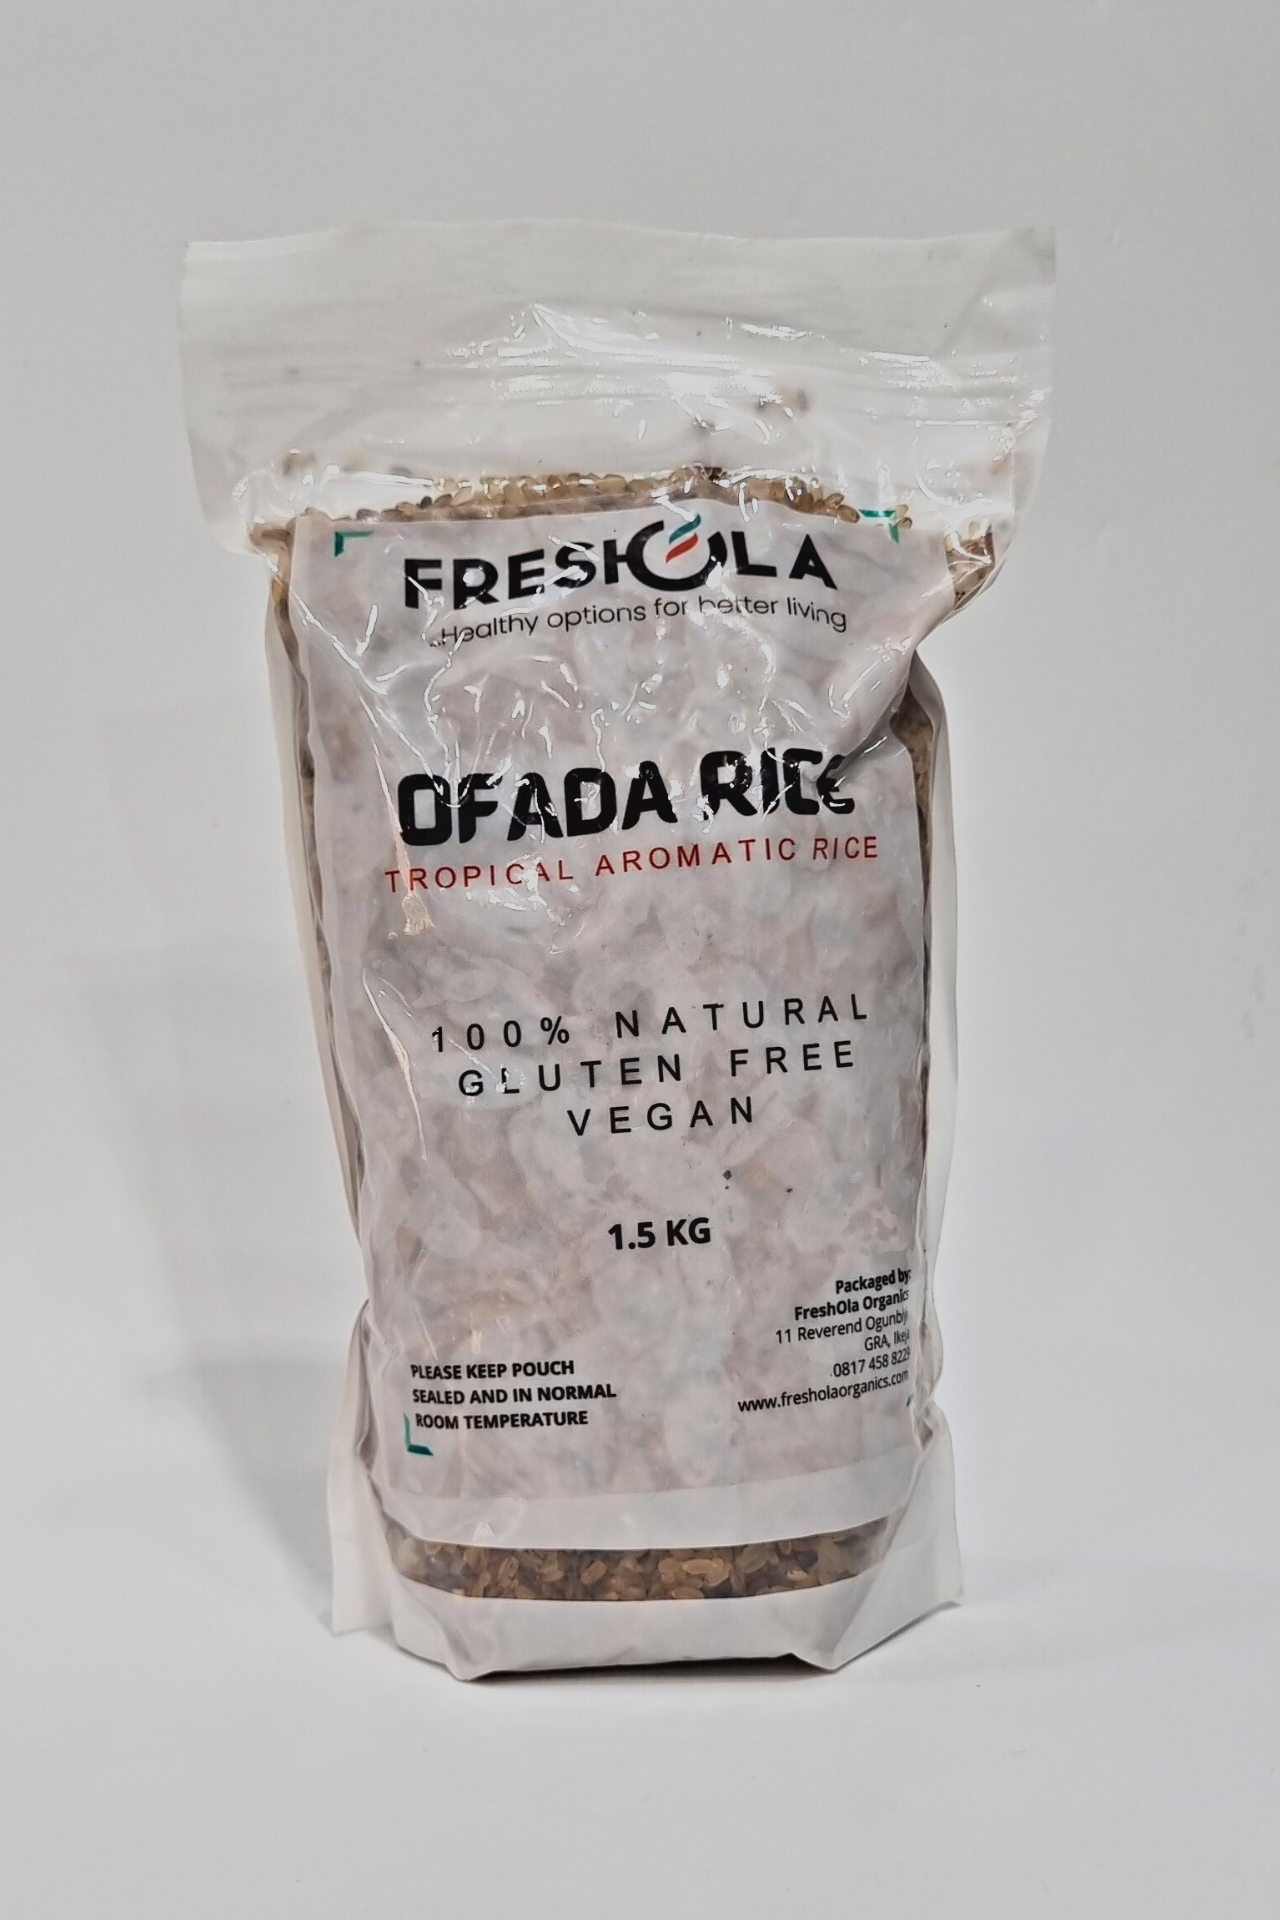 Freshola Ofada Rice